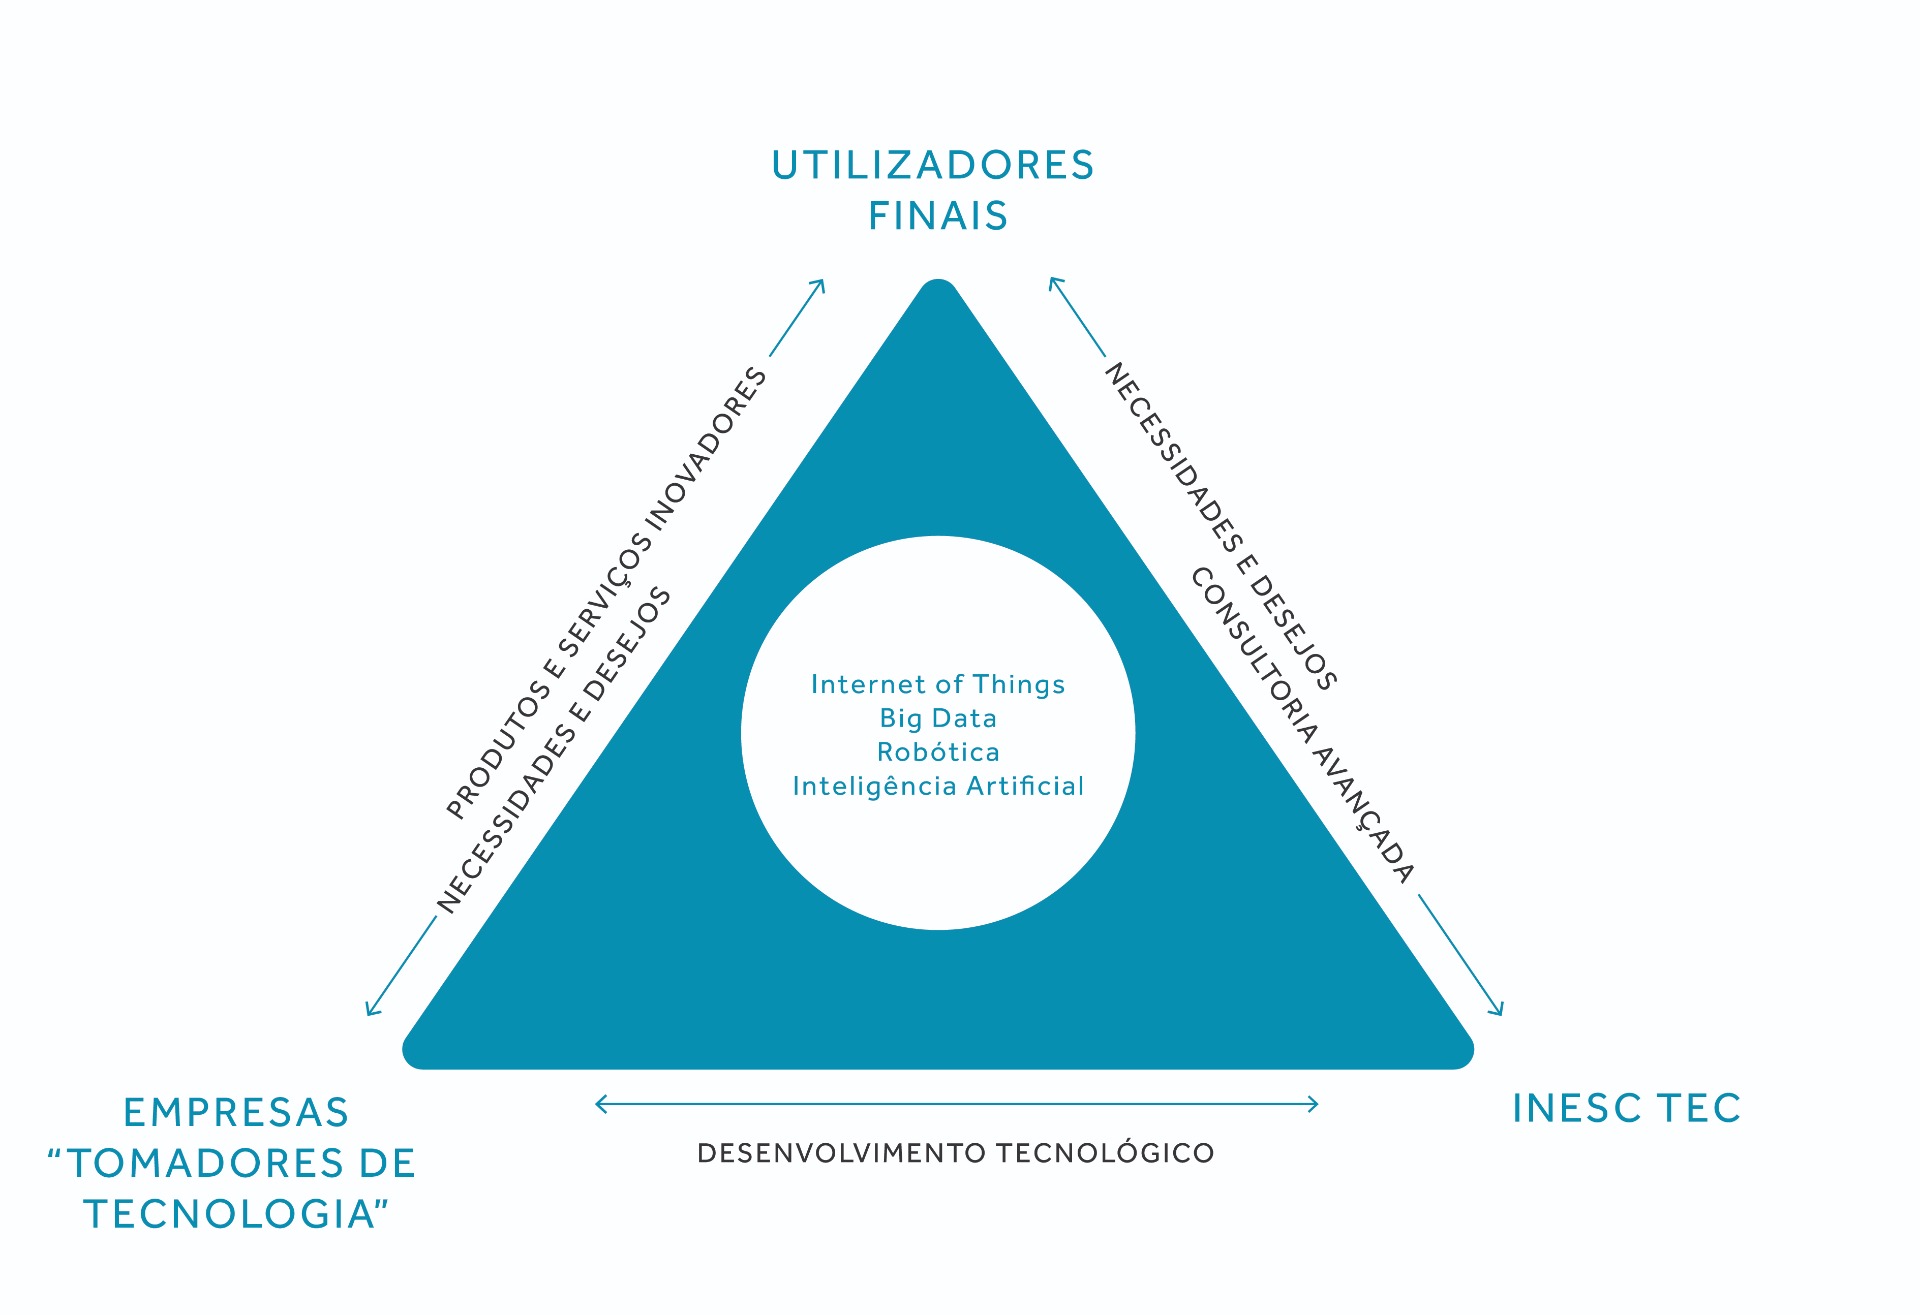 Triângulo azul com legendas nas três pontas. Na de cima, diz "utilizadores finais", na do lado esquerdo diz "empresas tomadoras de tecnologias" e na do lado direito diz "INESC TEC"